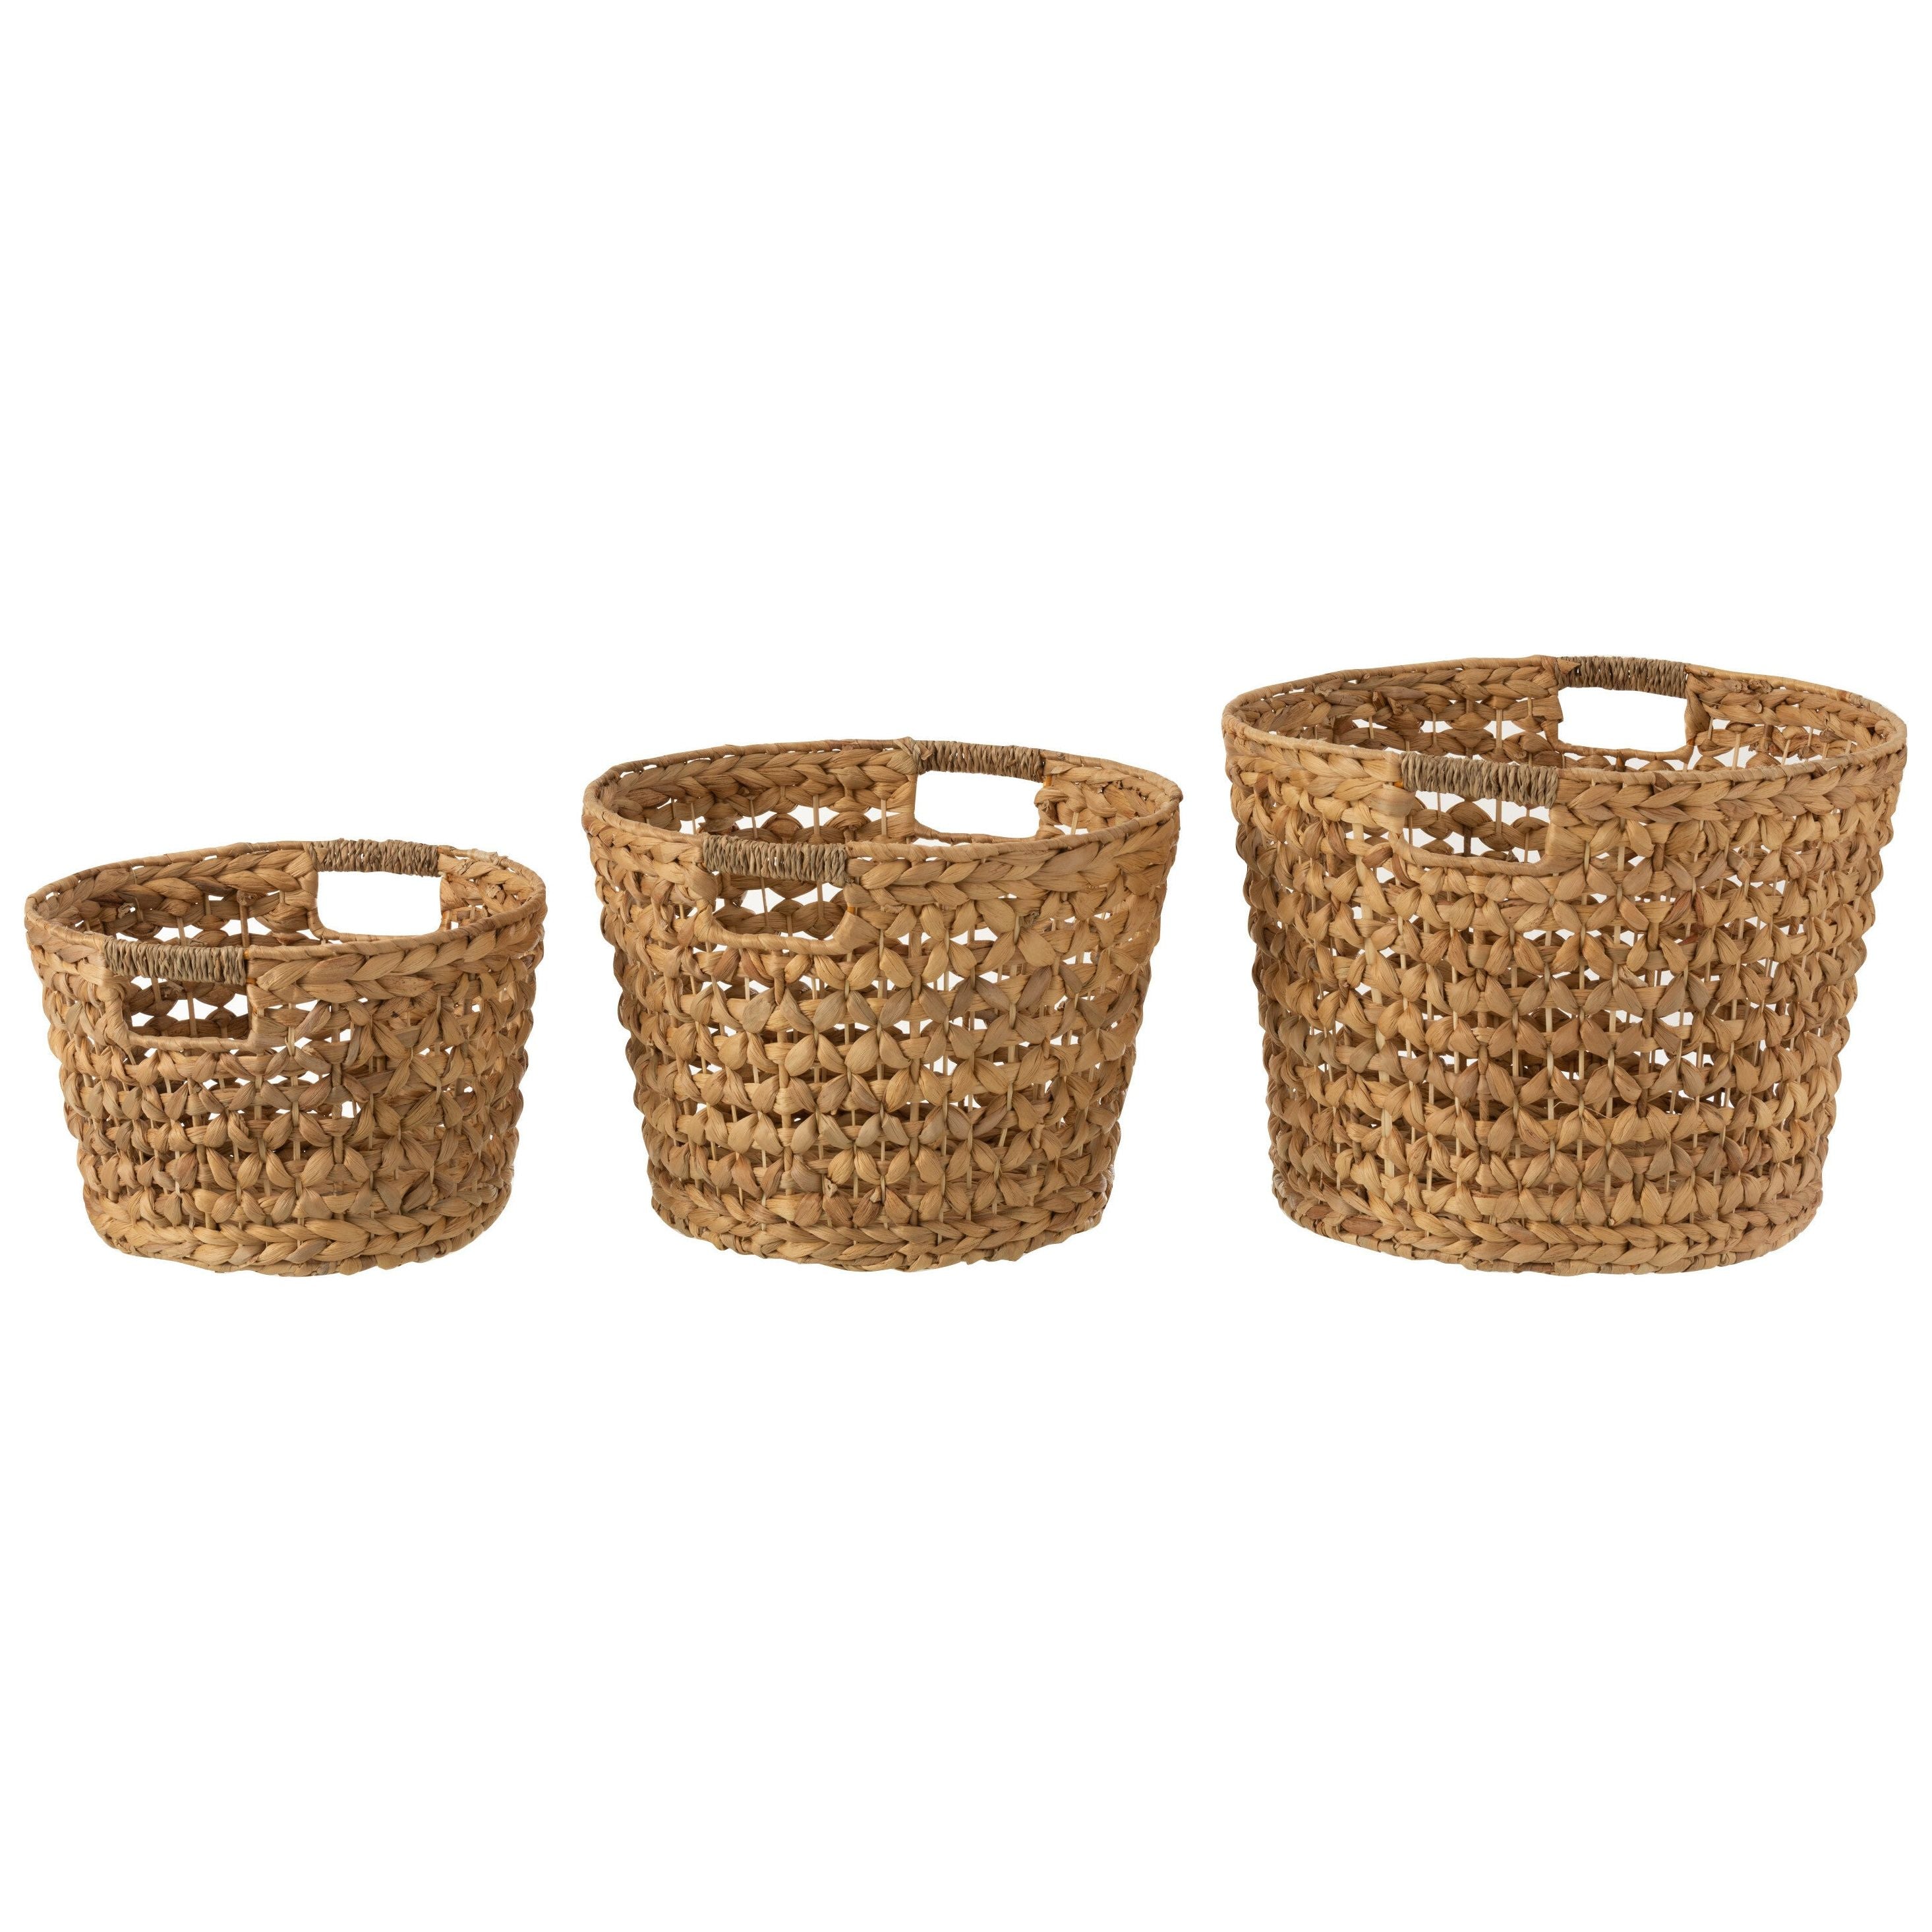 Baskets Water Hyacinth Natural